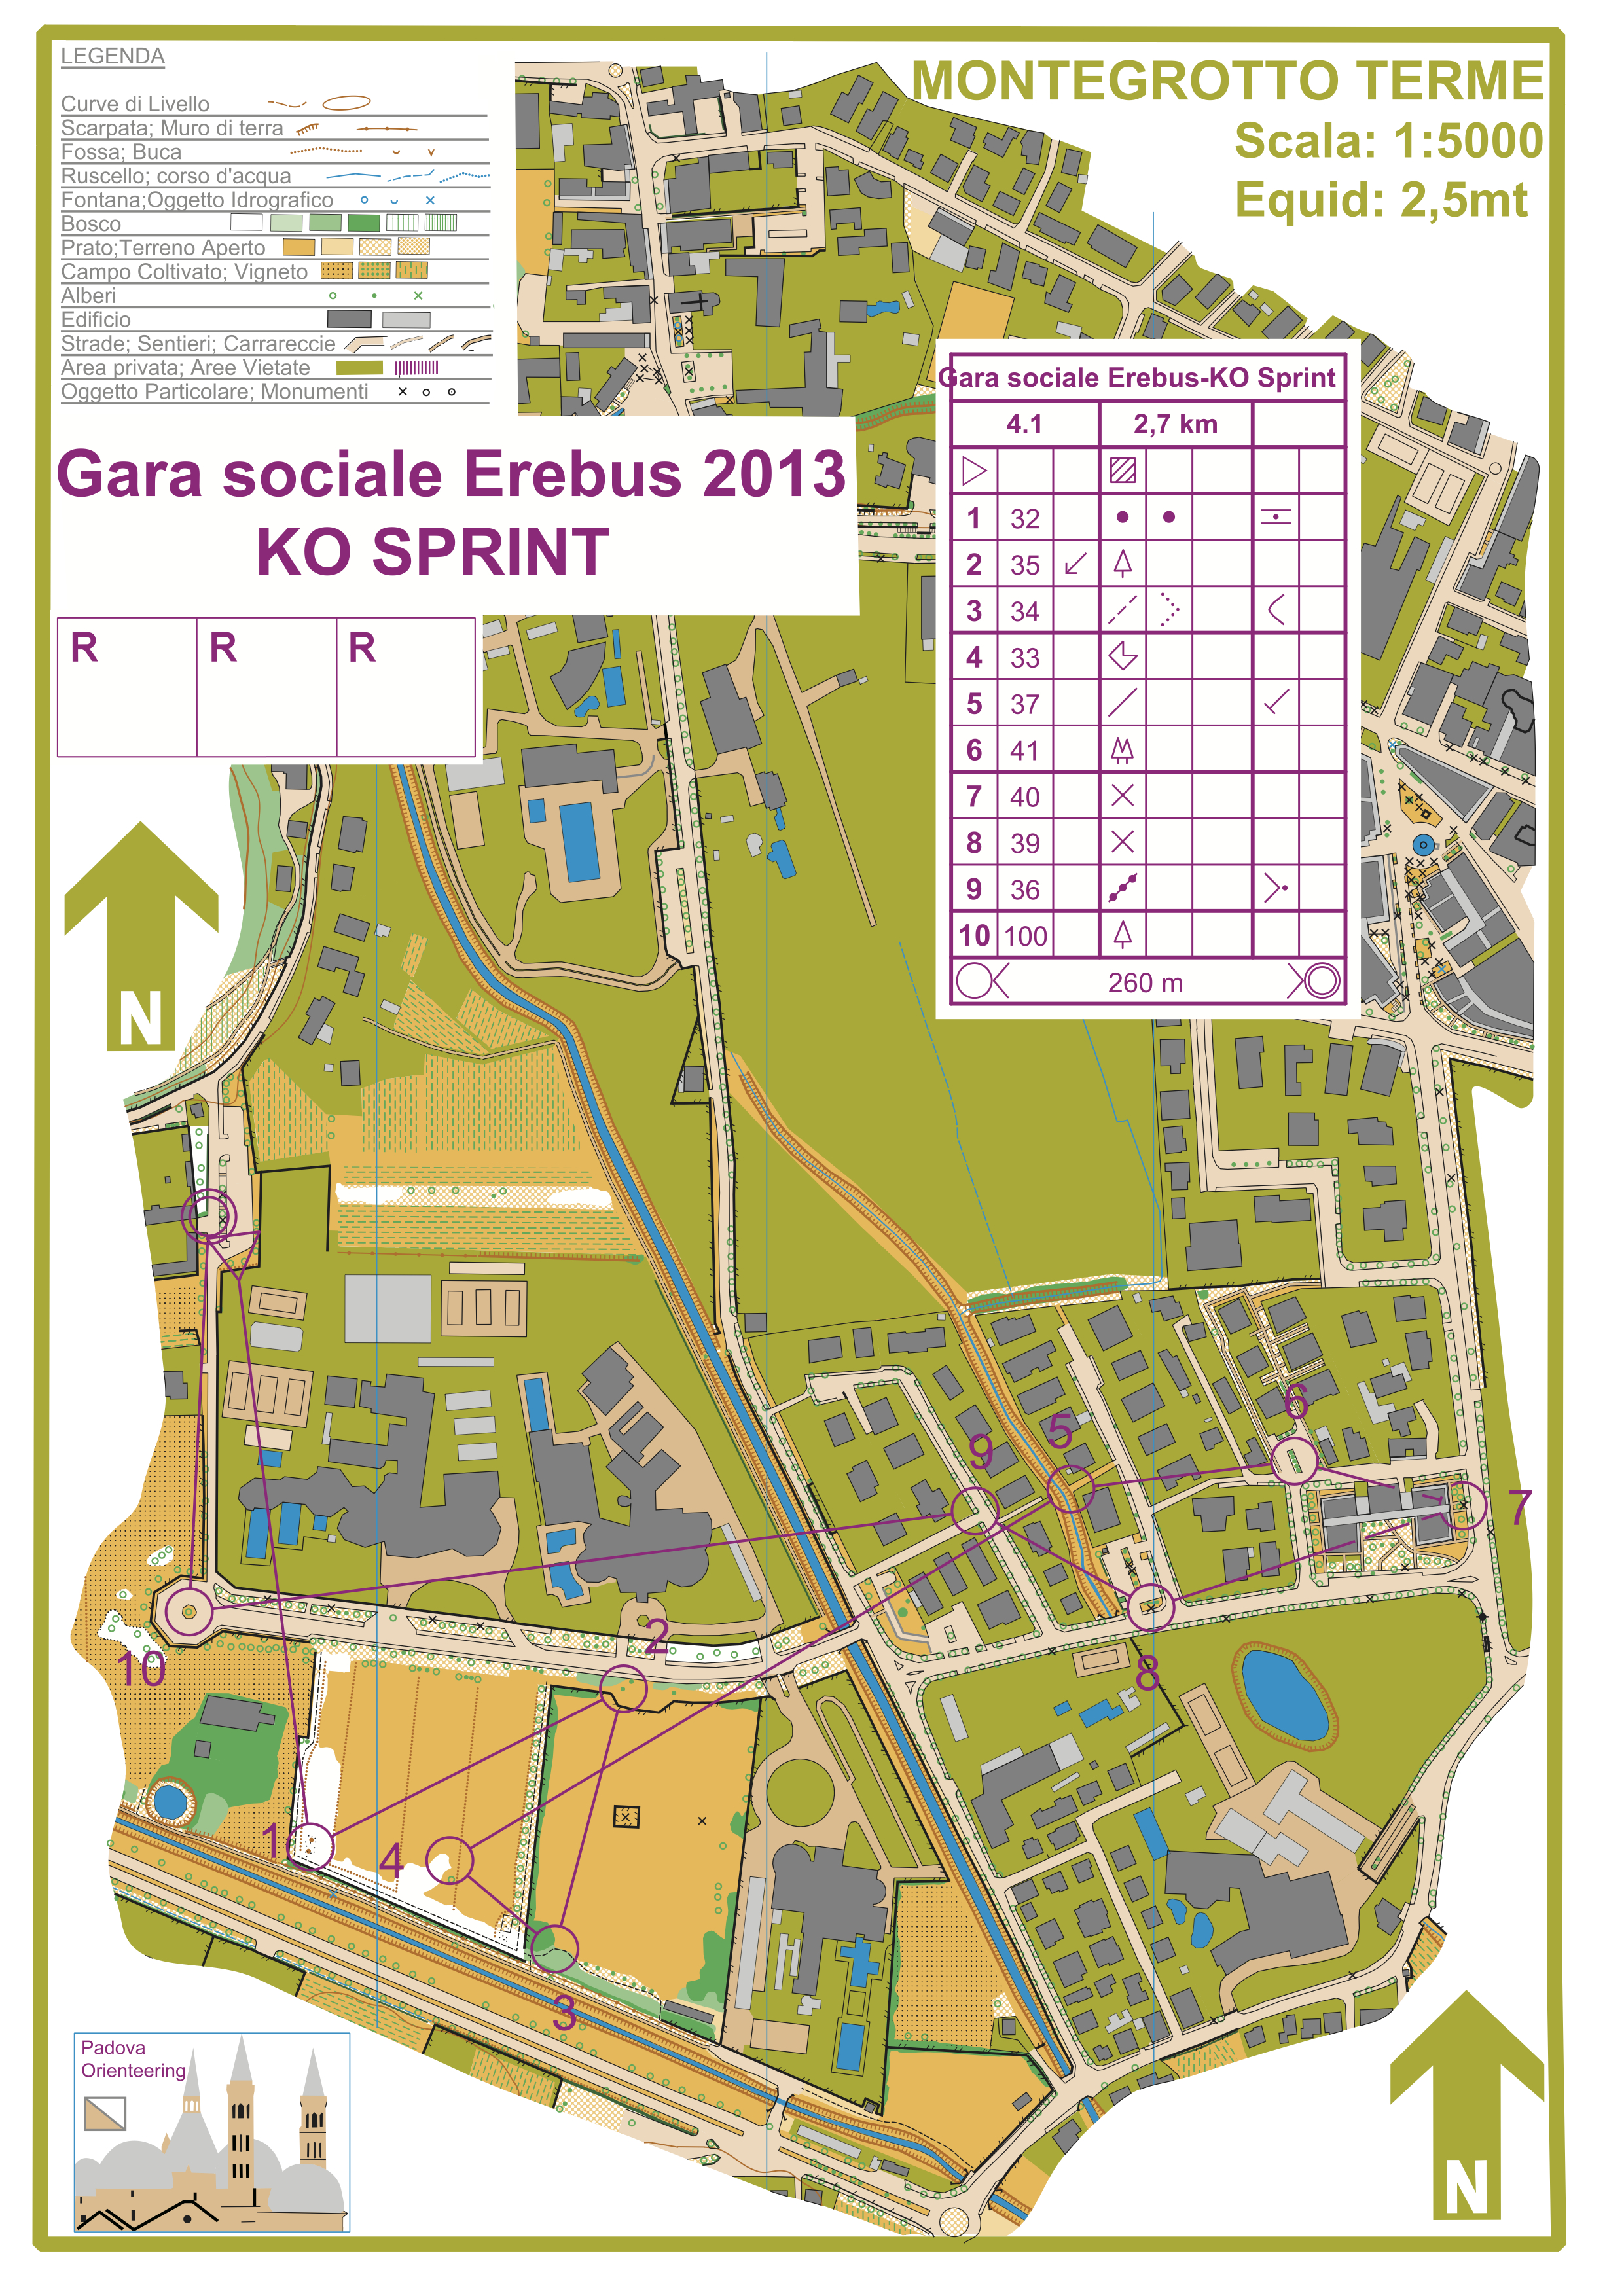 Gara Sociale Erebus - KO Sprint (2013-11-17)